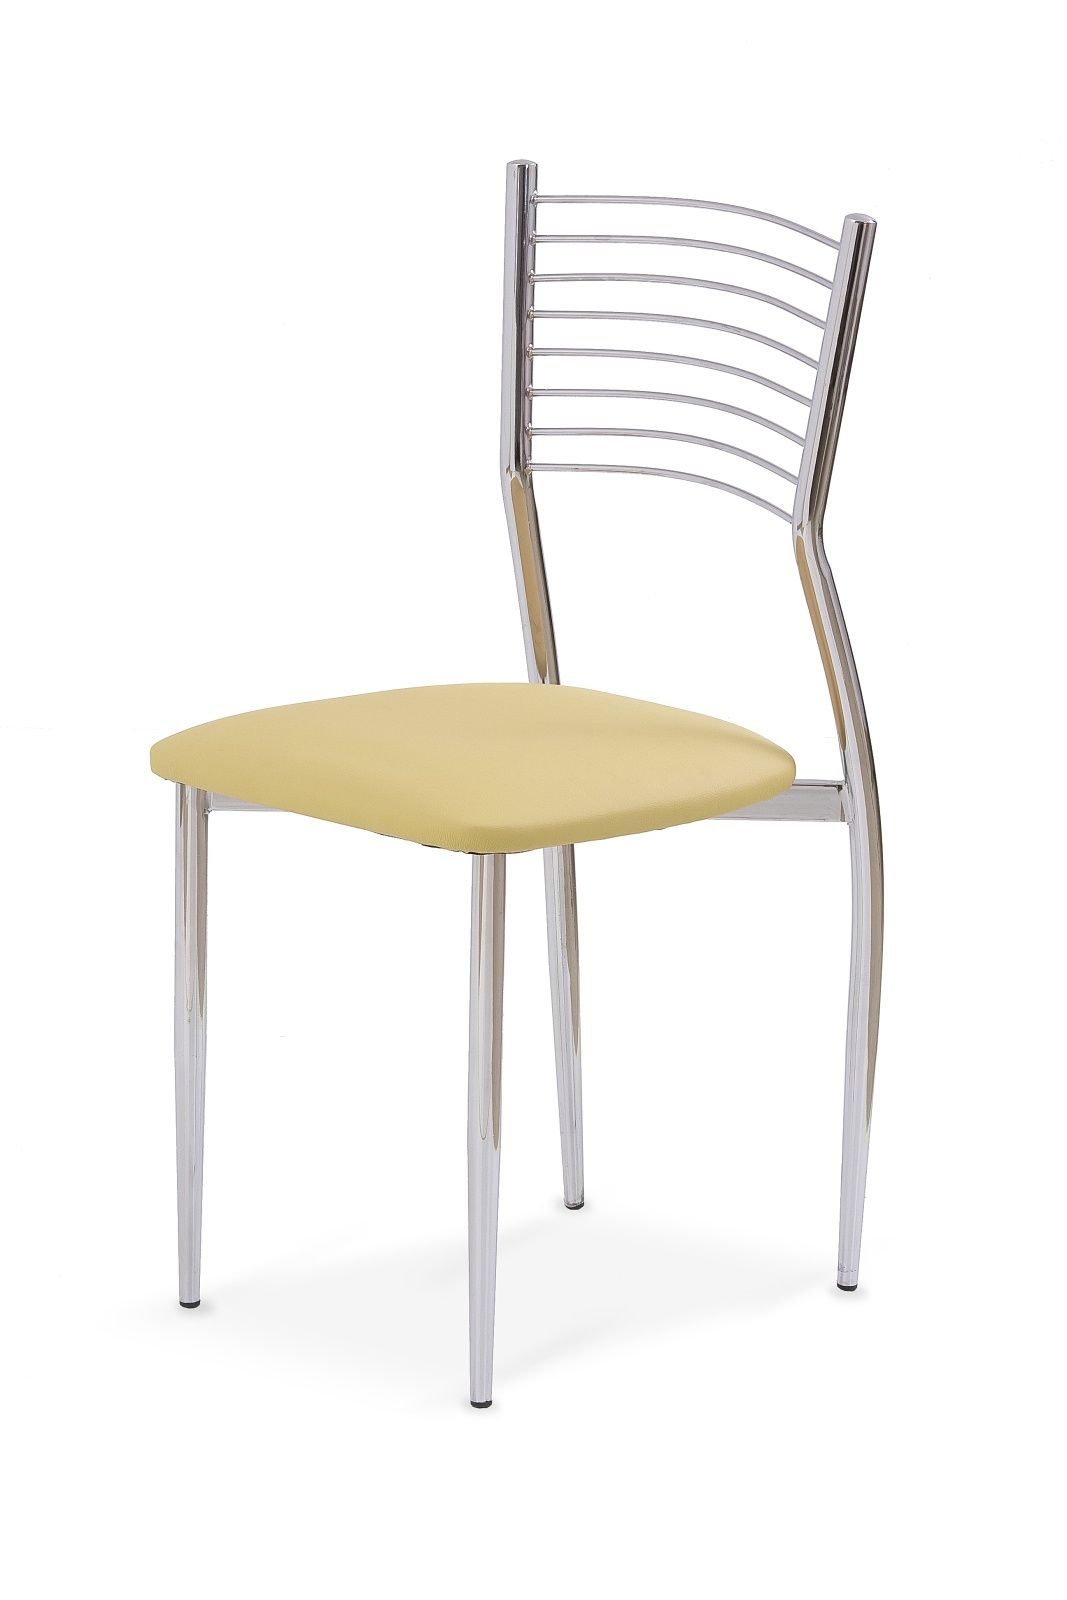 Jedálenská stolička K9 krémová